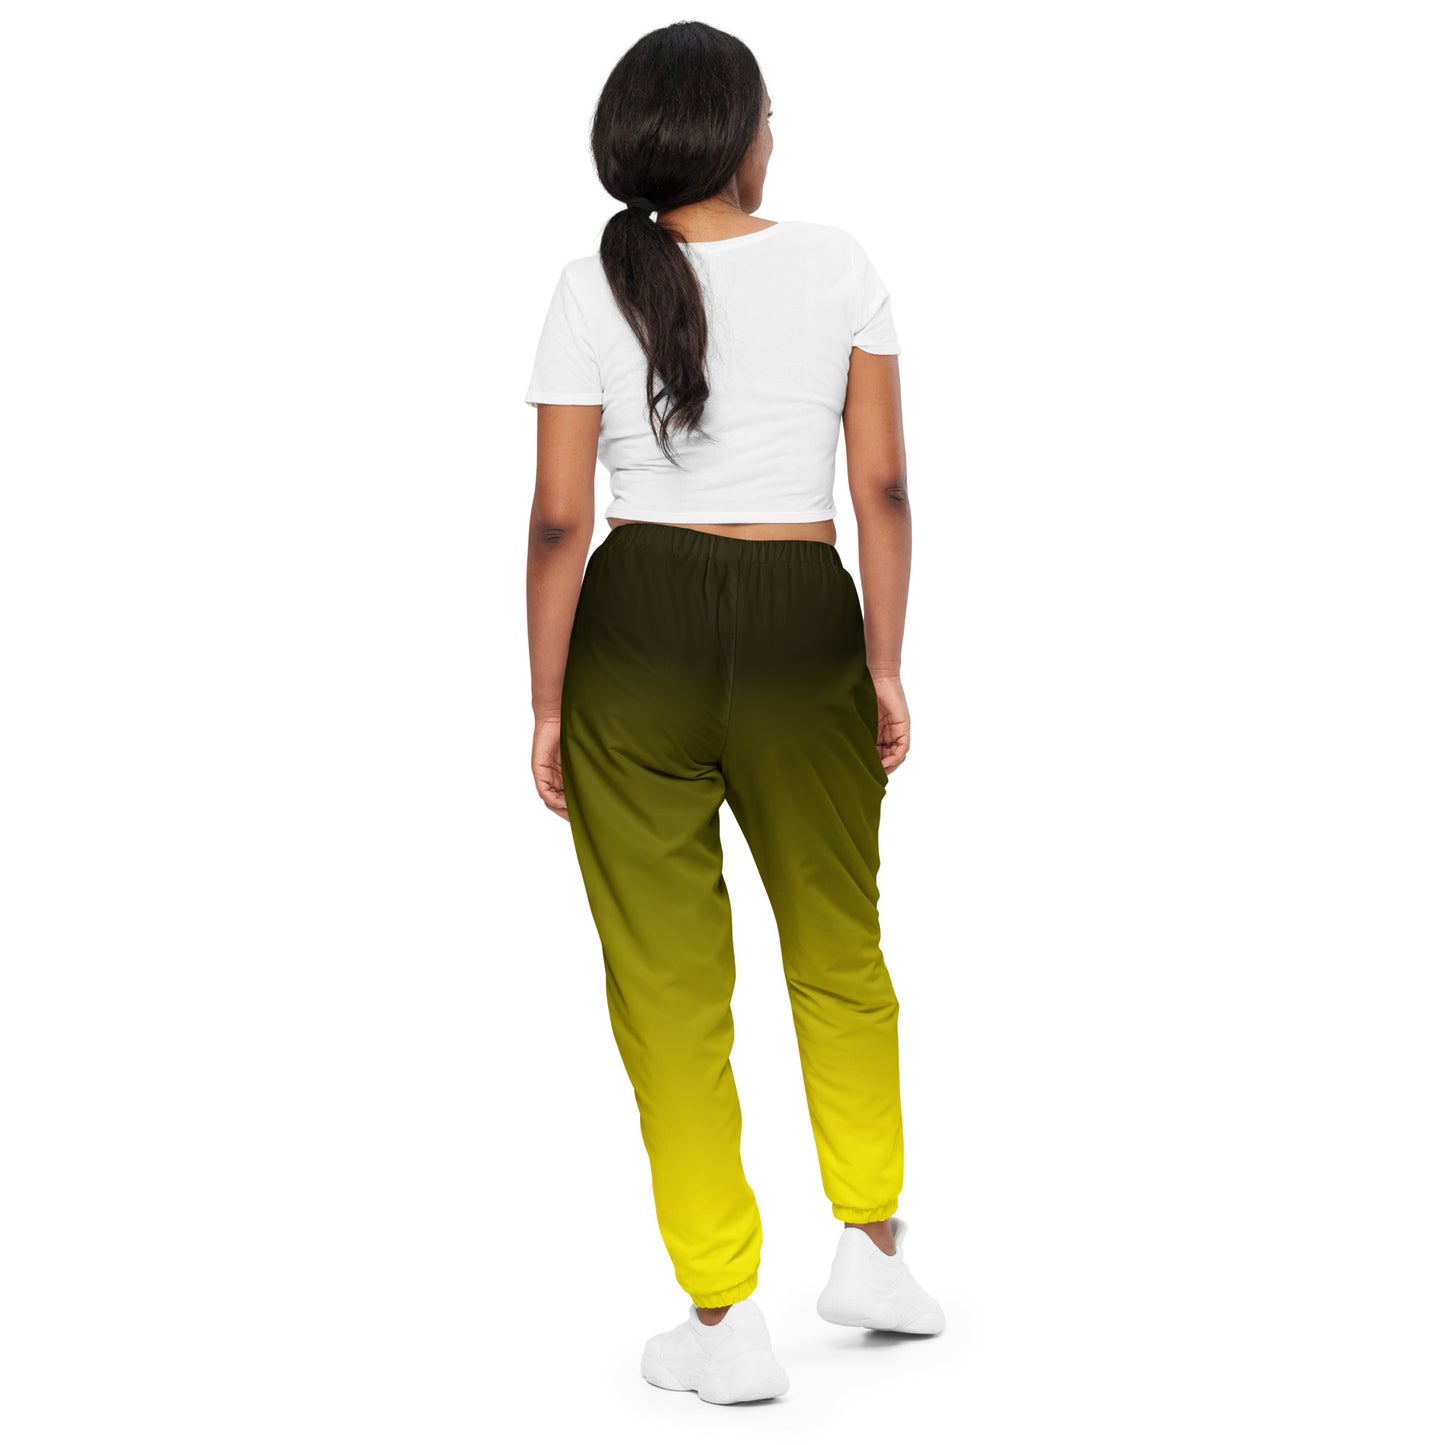 Gradient Black to Yellow Unisex track pants